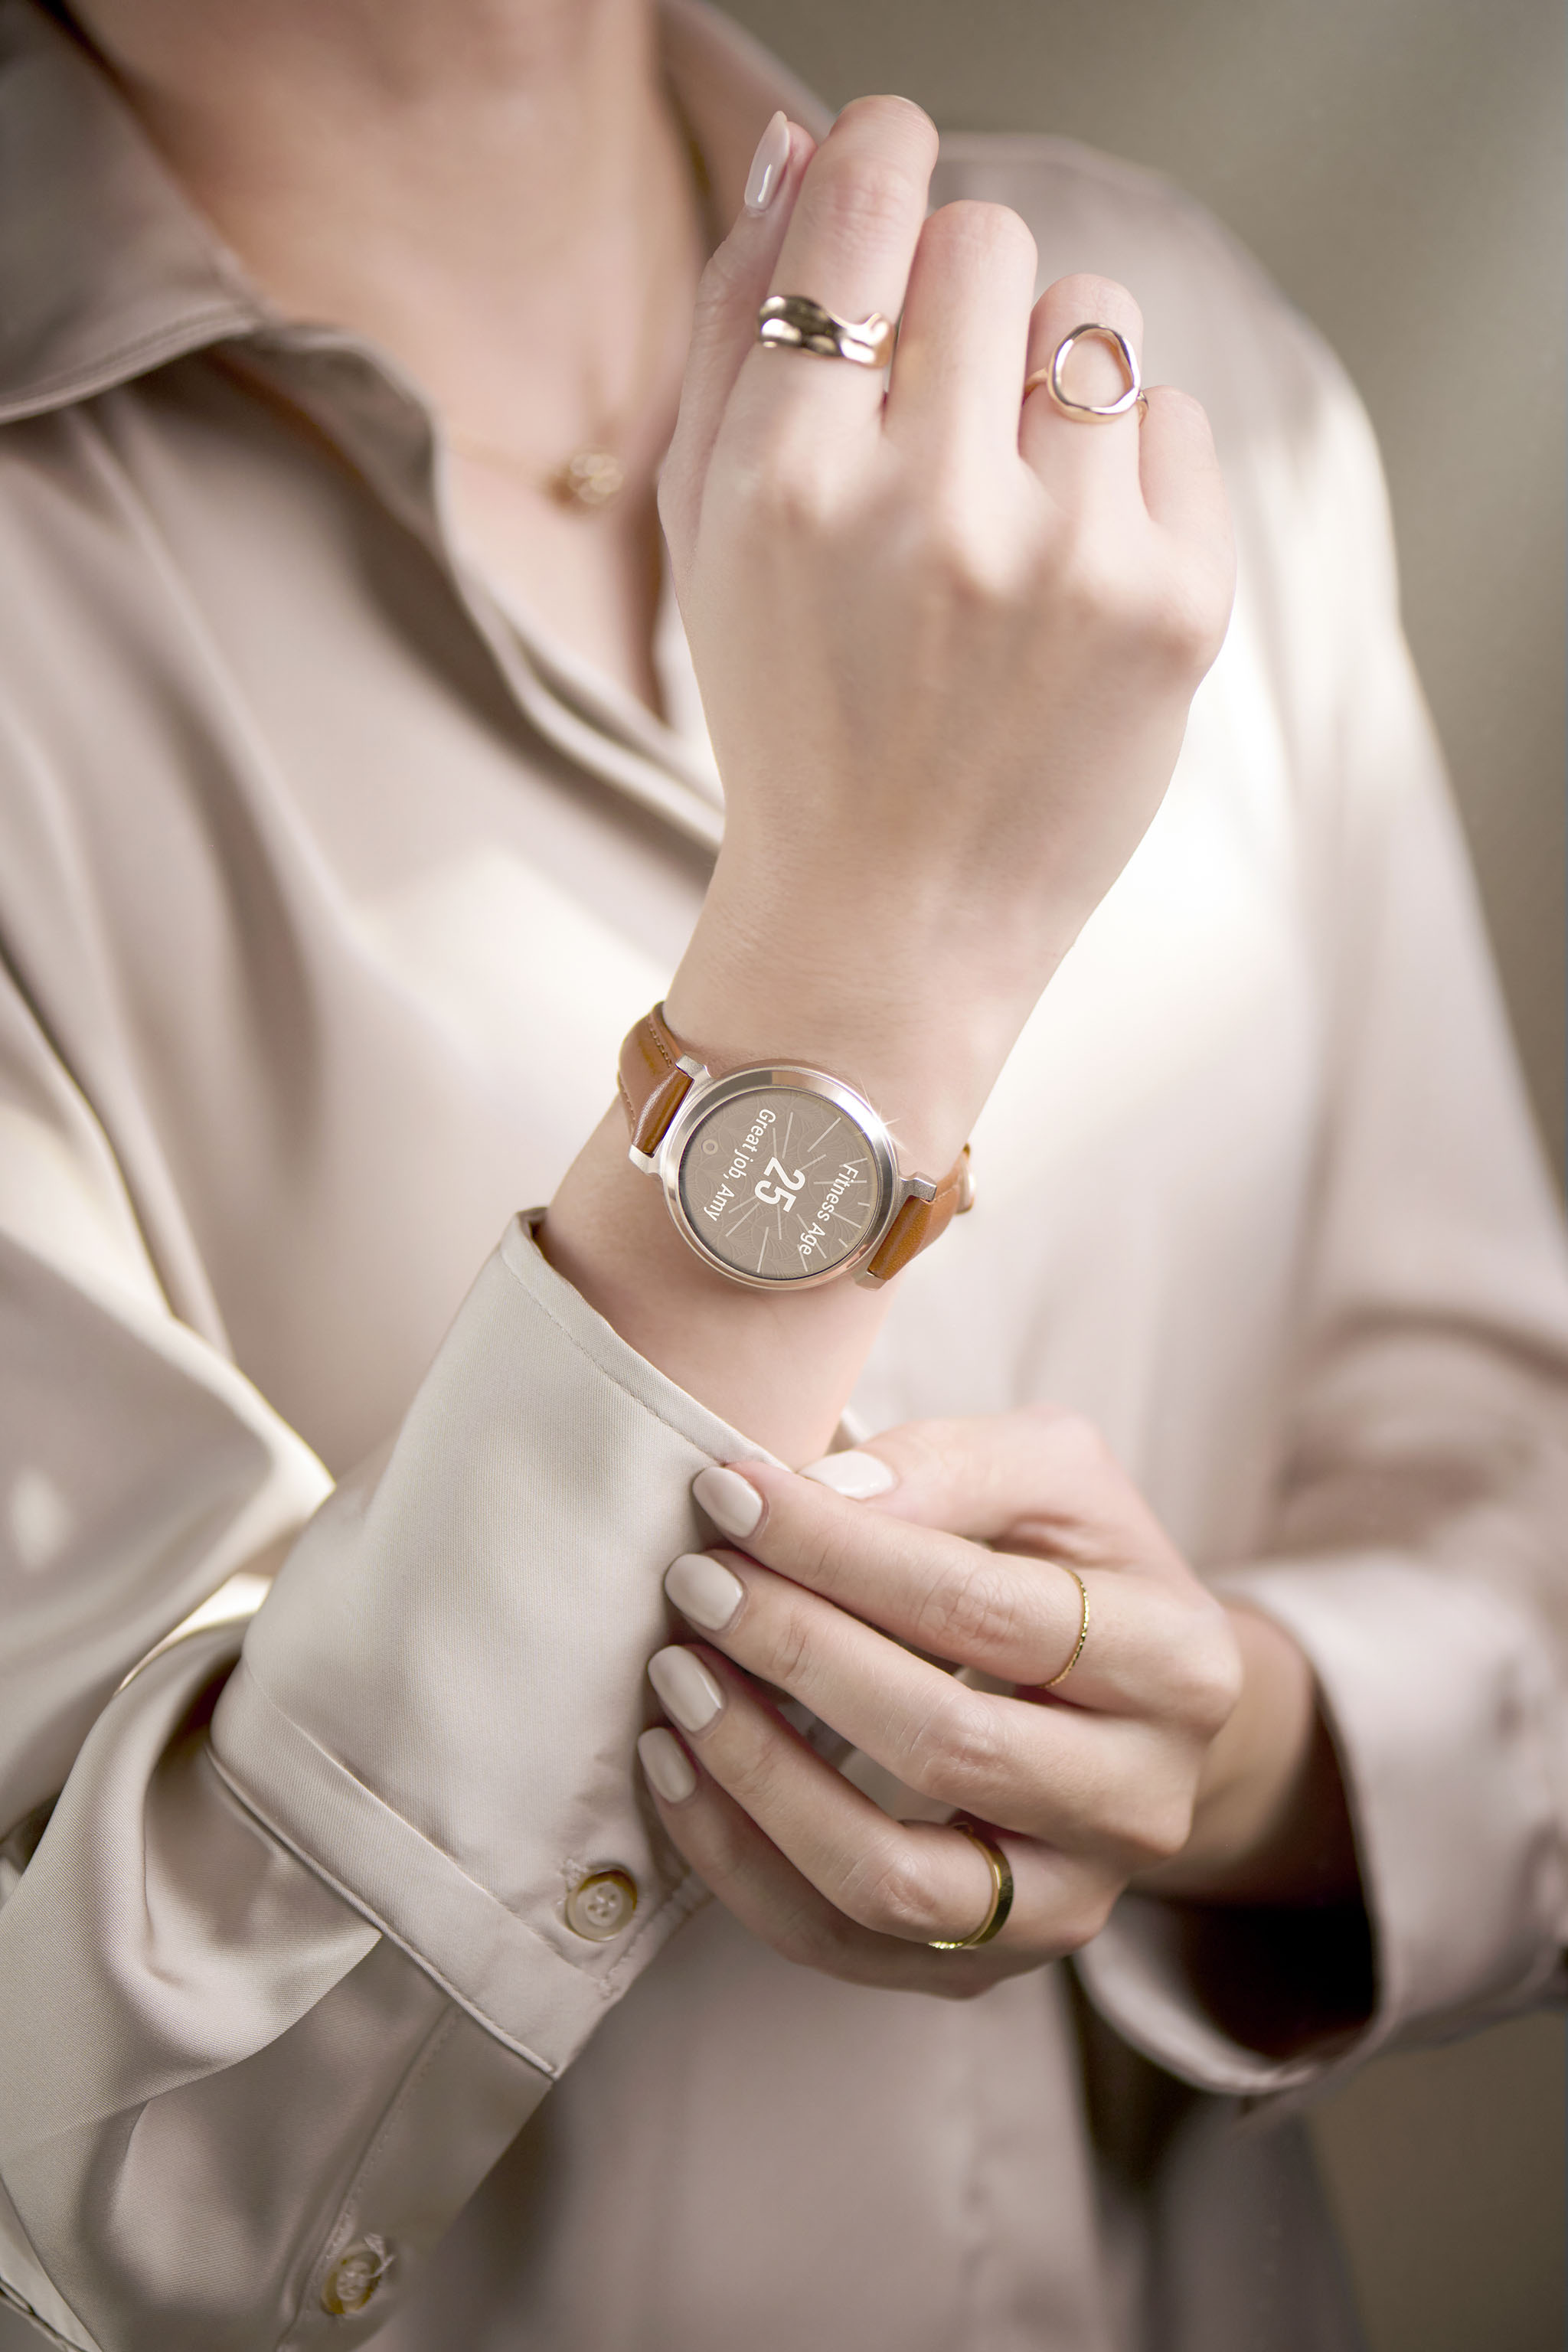 Garmin ra mắt smartwatch thời trang cho phái nữ: Thiết kế cao cấp, nhiều dây đeo, giá từ 6,99 triệu đồng- Ảnh 2.